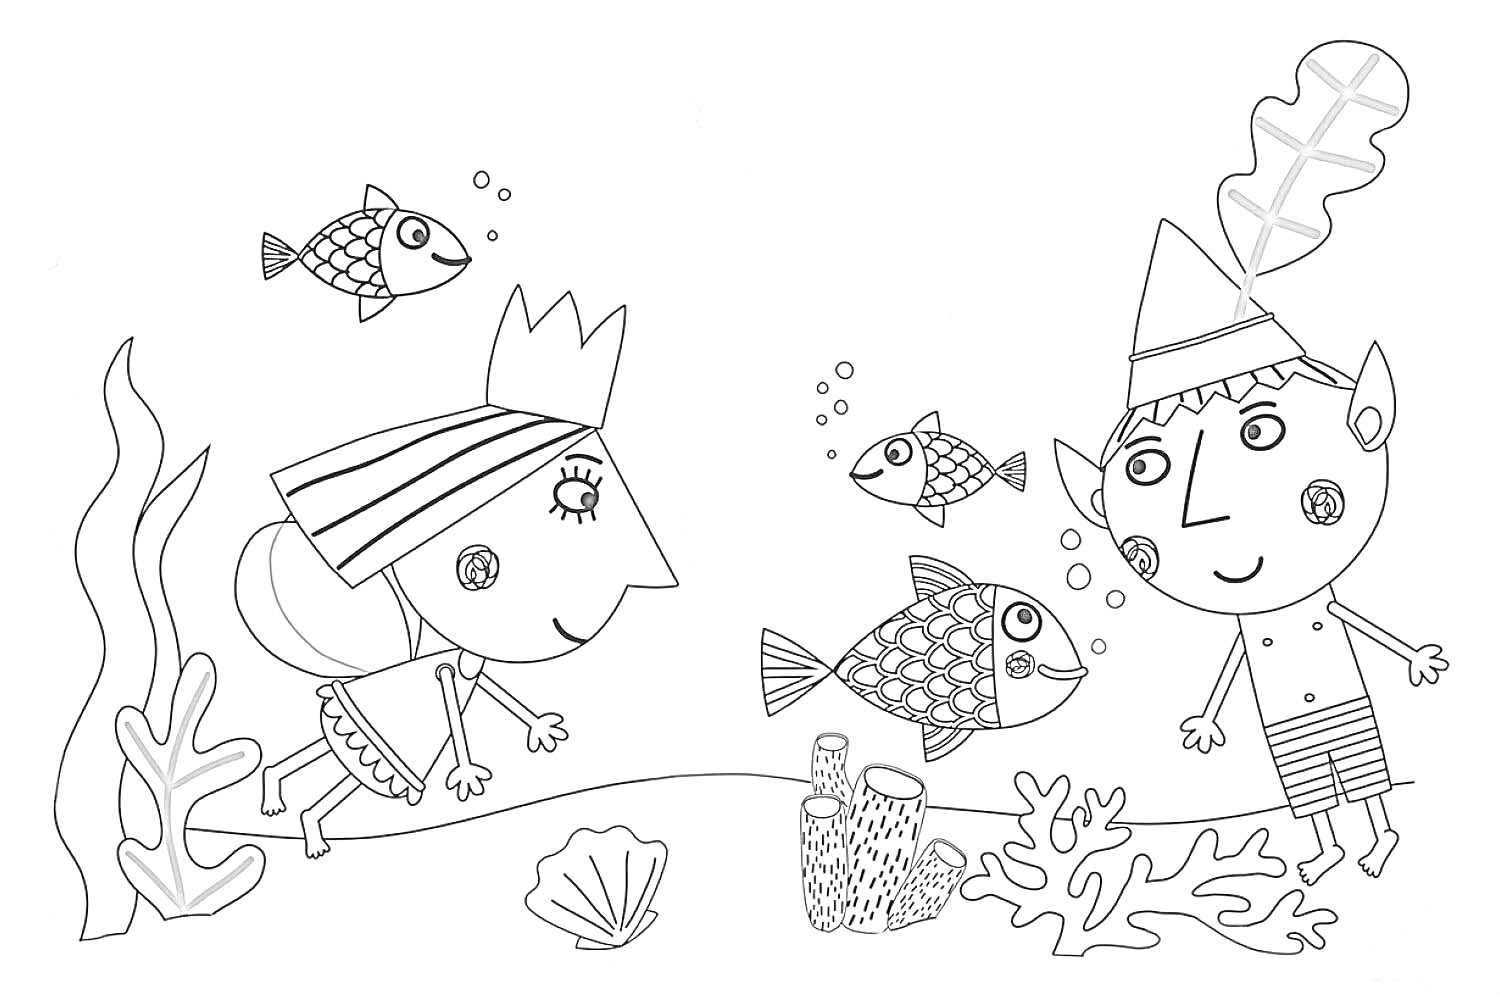 Раскраска Бен и Холли под водой с тремя рыбами, ракушкой, водорослями и коралловыми рифами